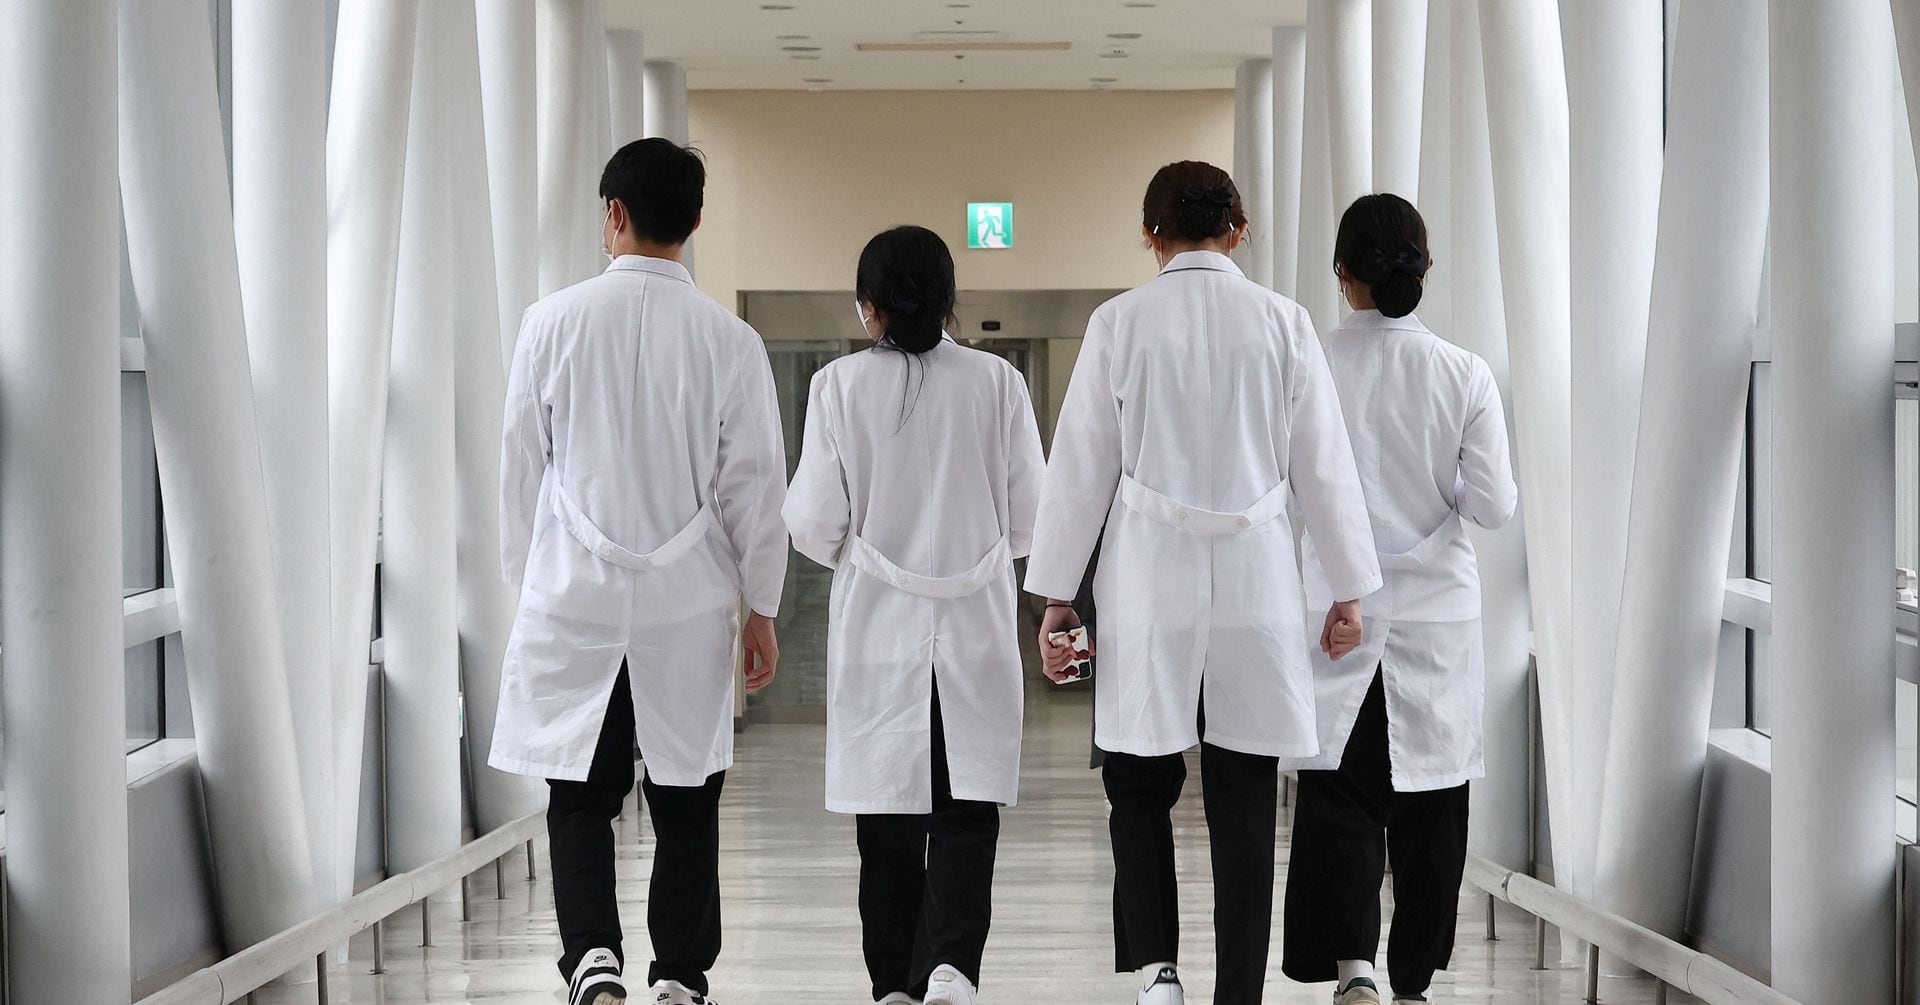 韓国研修医が20日ストへ、医学部増員に抗議 患者の処置に影響も